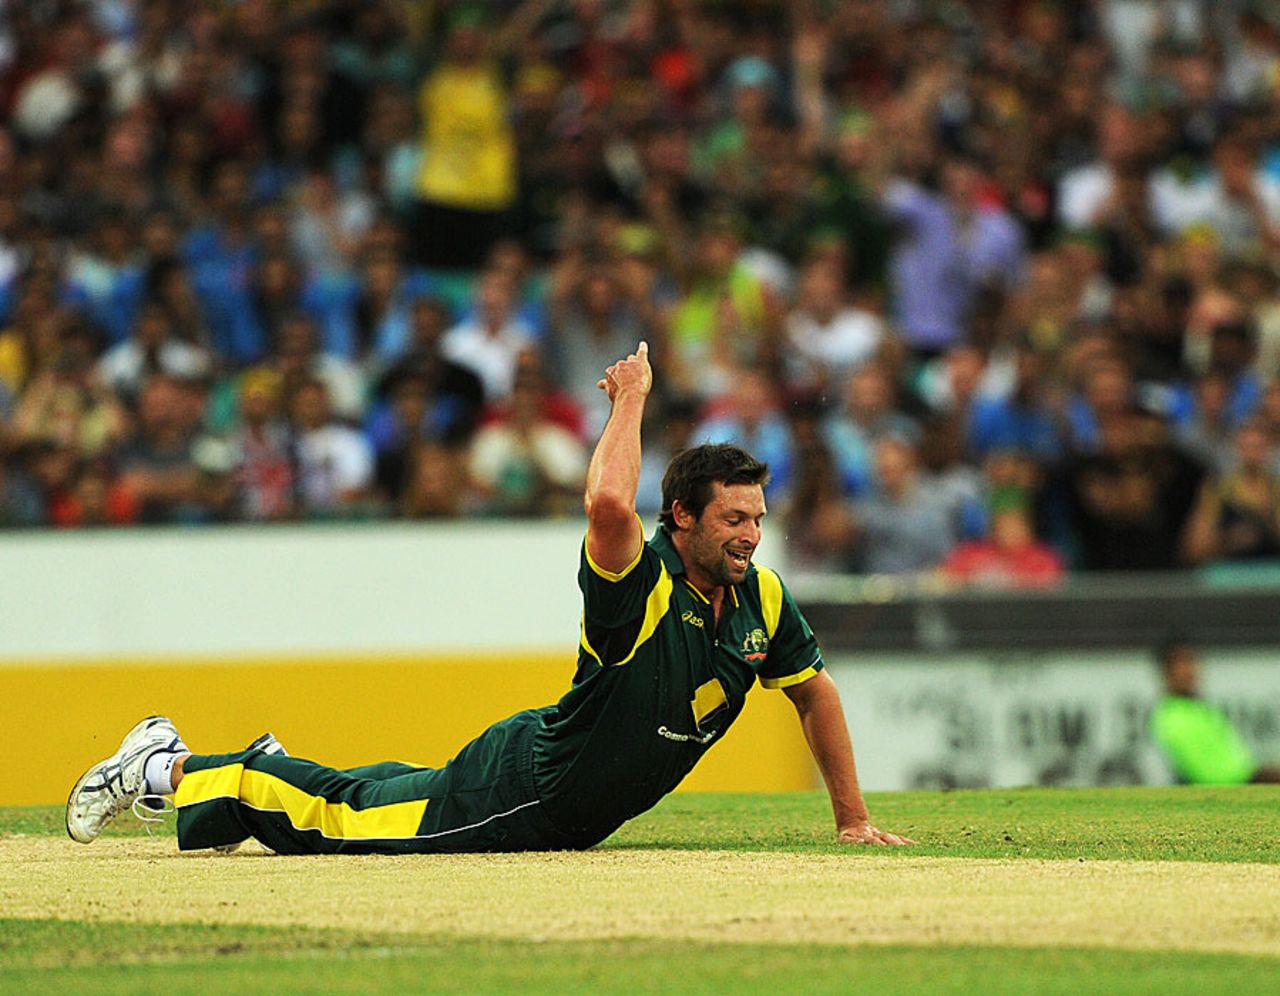 Ben Hilfenhaus took a smart, low return-catch, Australia v India, CB Series, Sydney, February 26, 2012